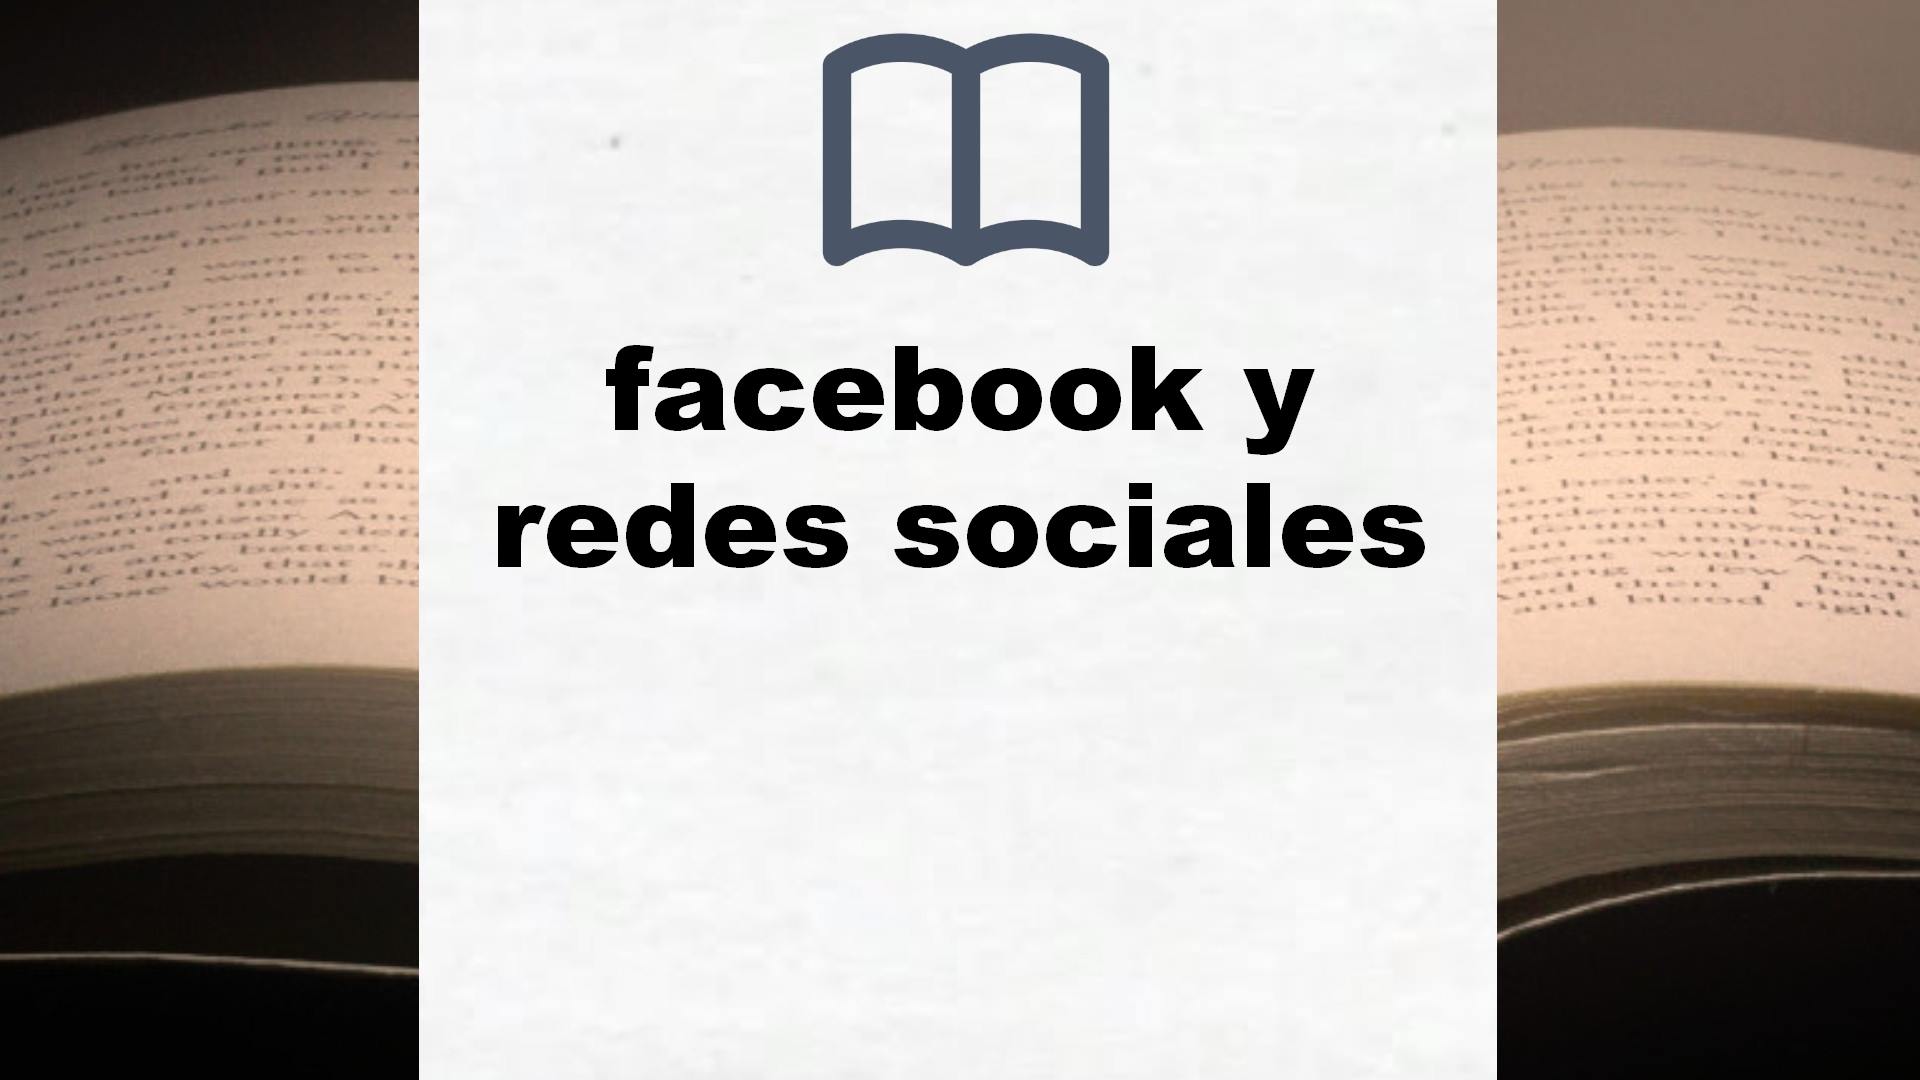 Libros sobre facebook y redes sociales